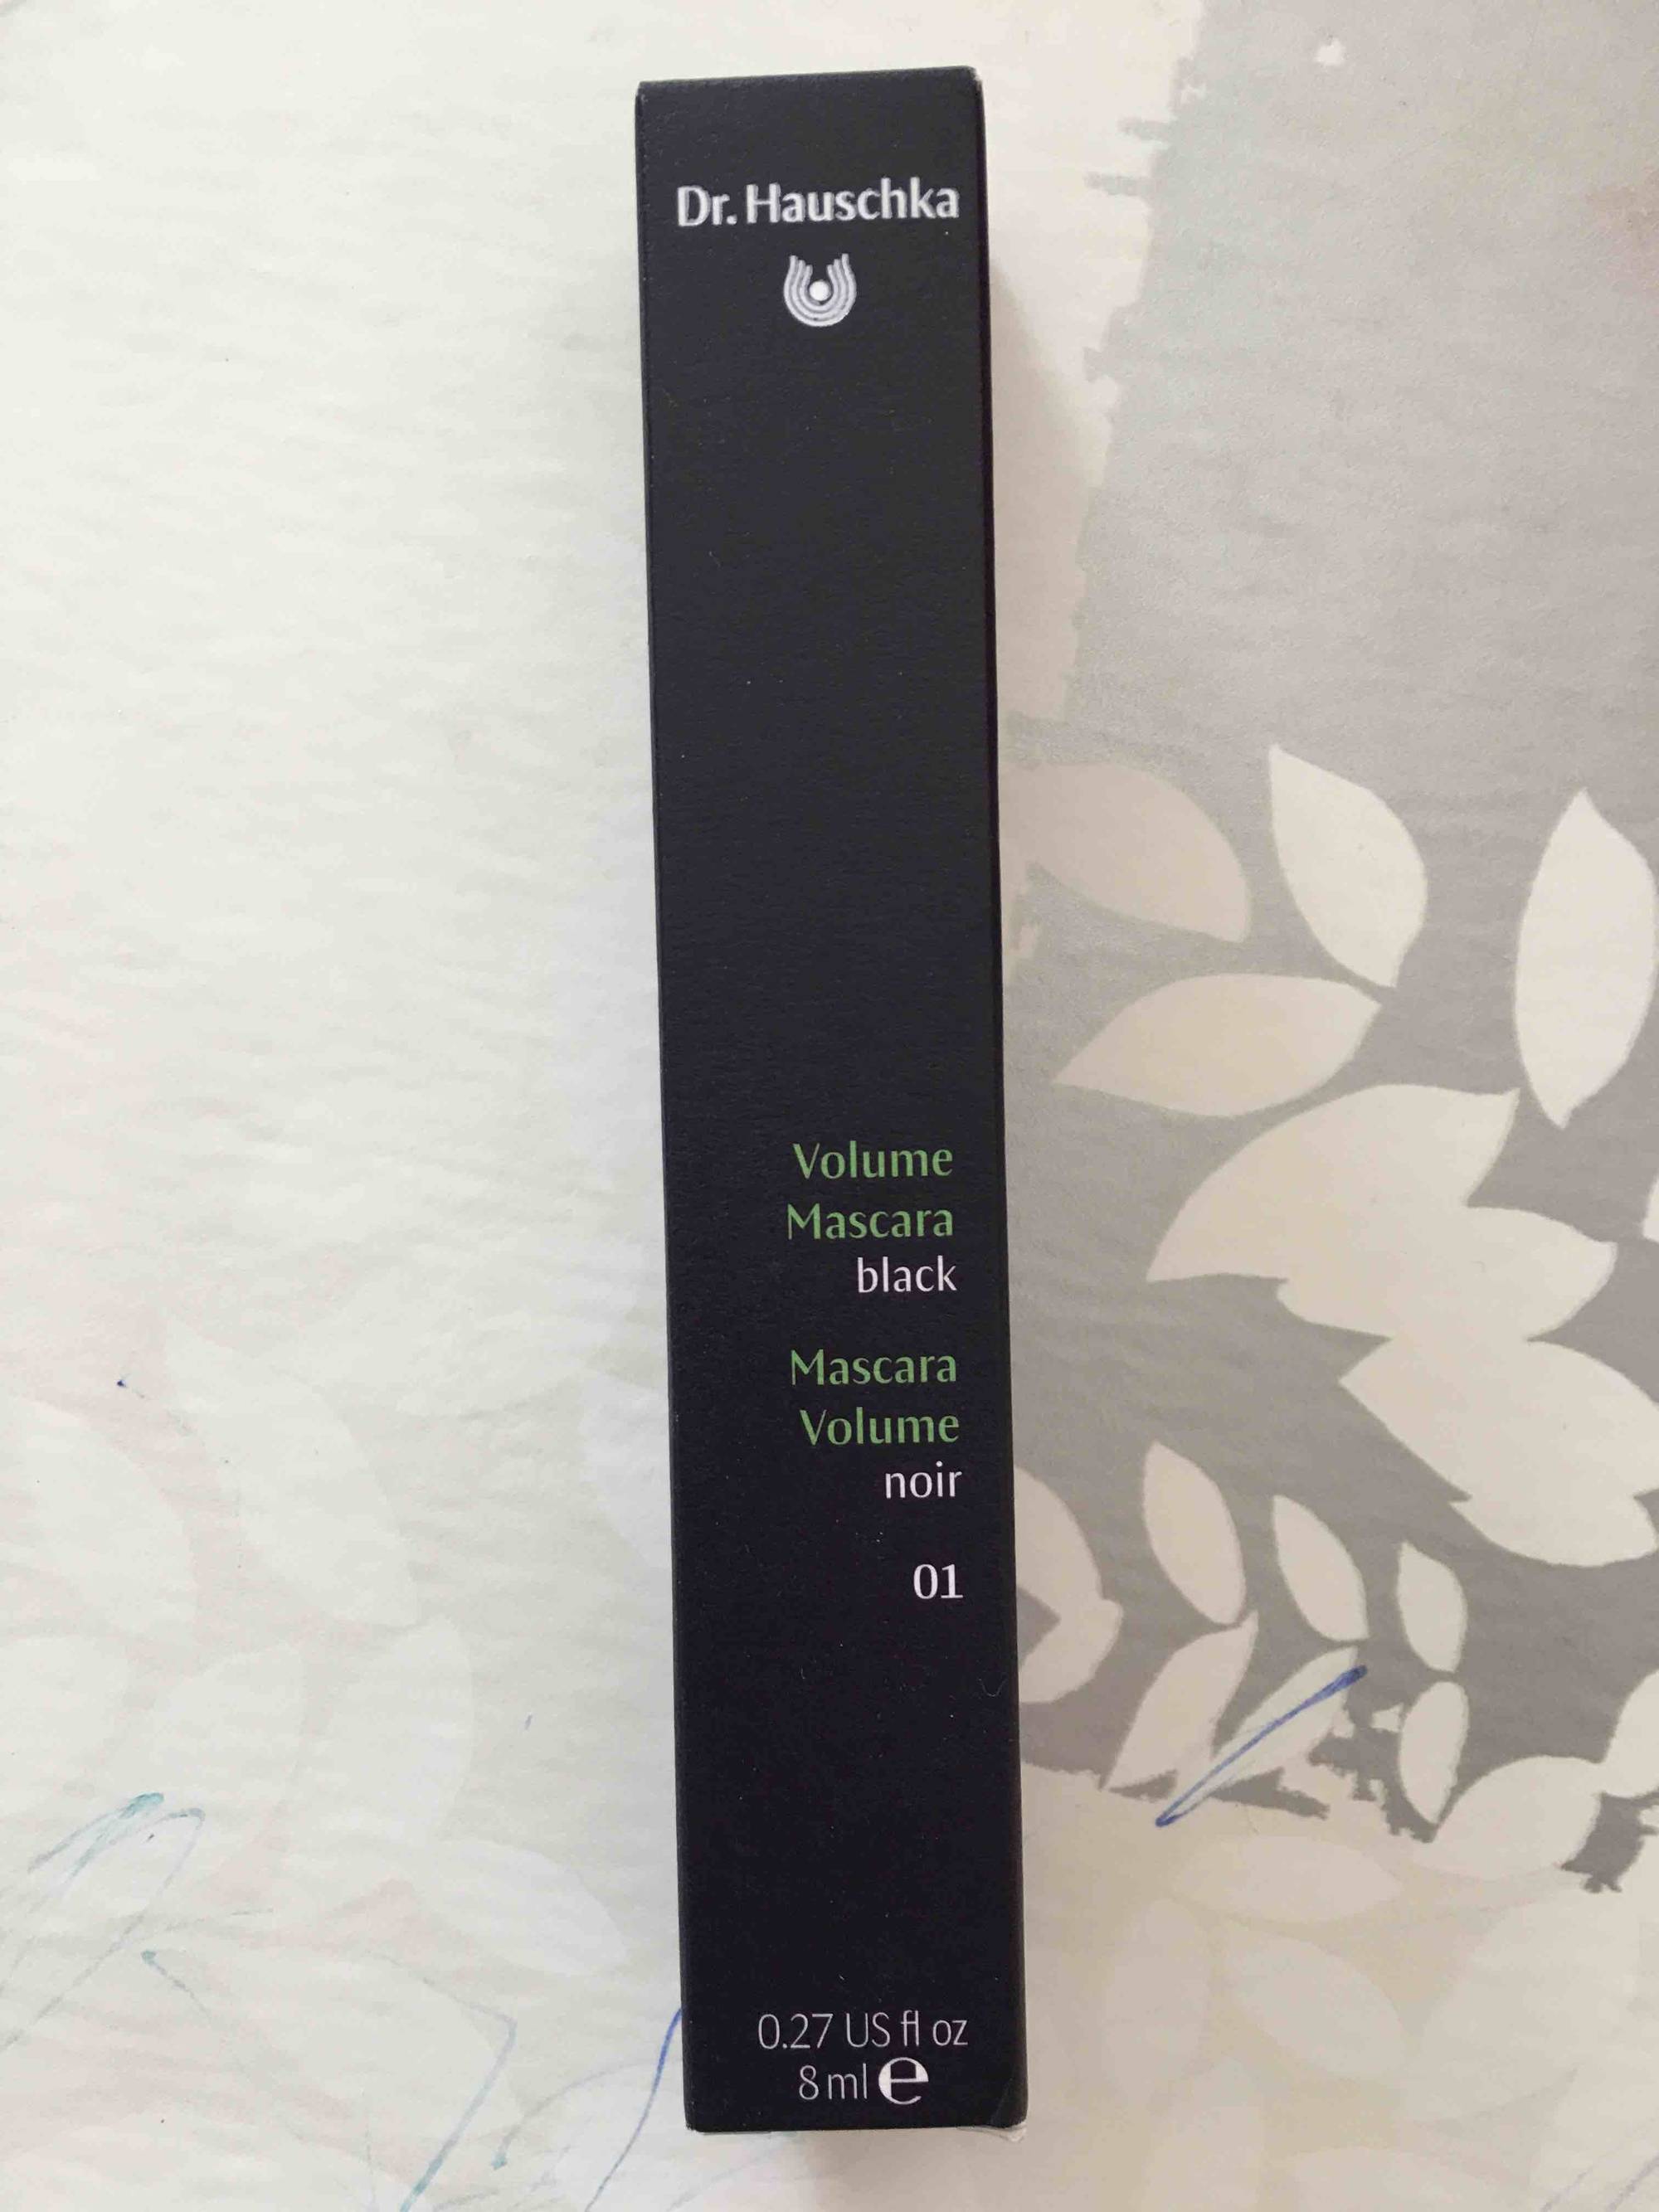 DR. HAUSCHKA - Mascara volume noir 01